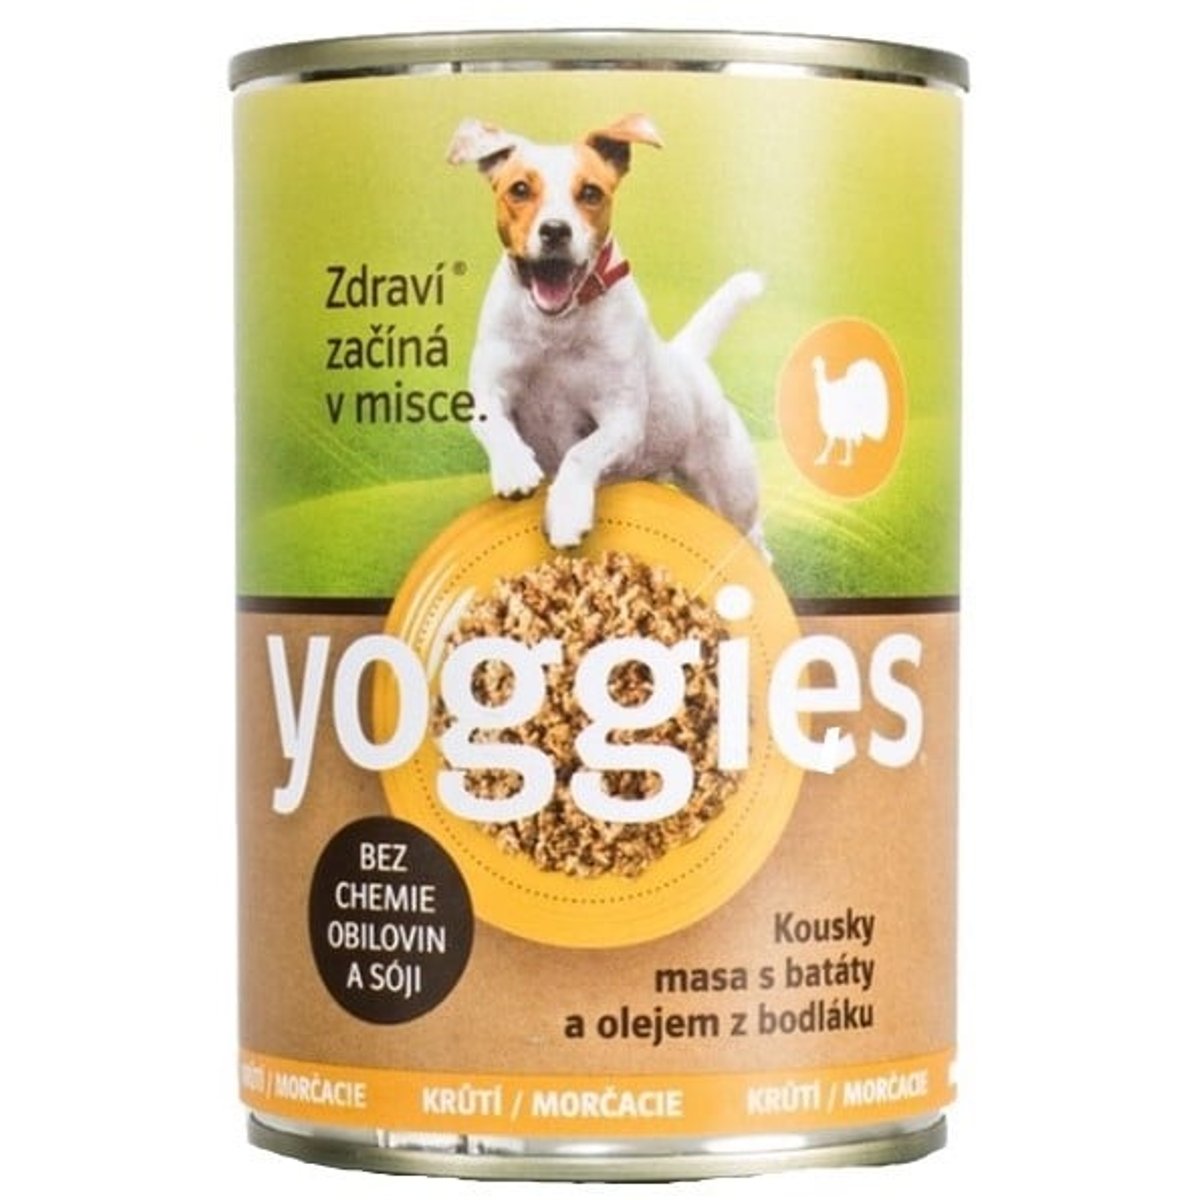 Yoggies Krůtí konzerva pro psy s batáty a olejem z bodláku